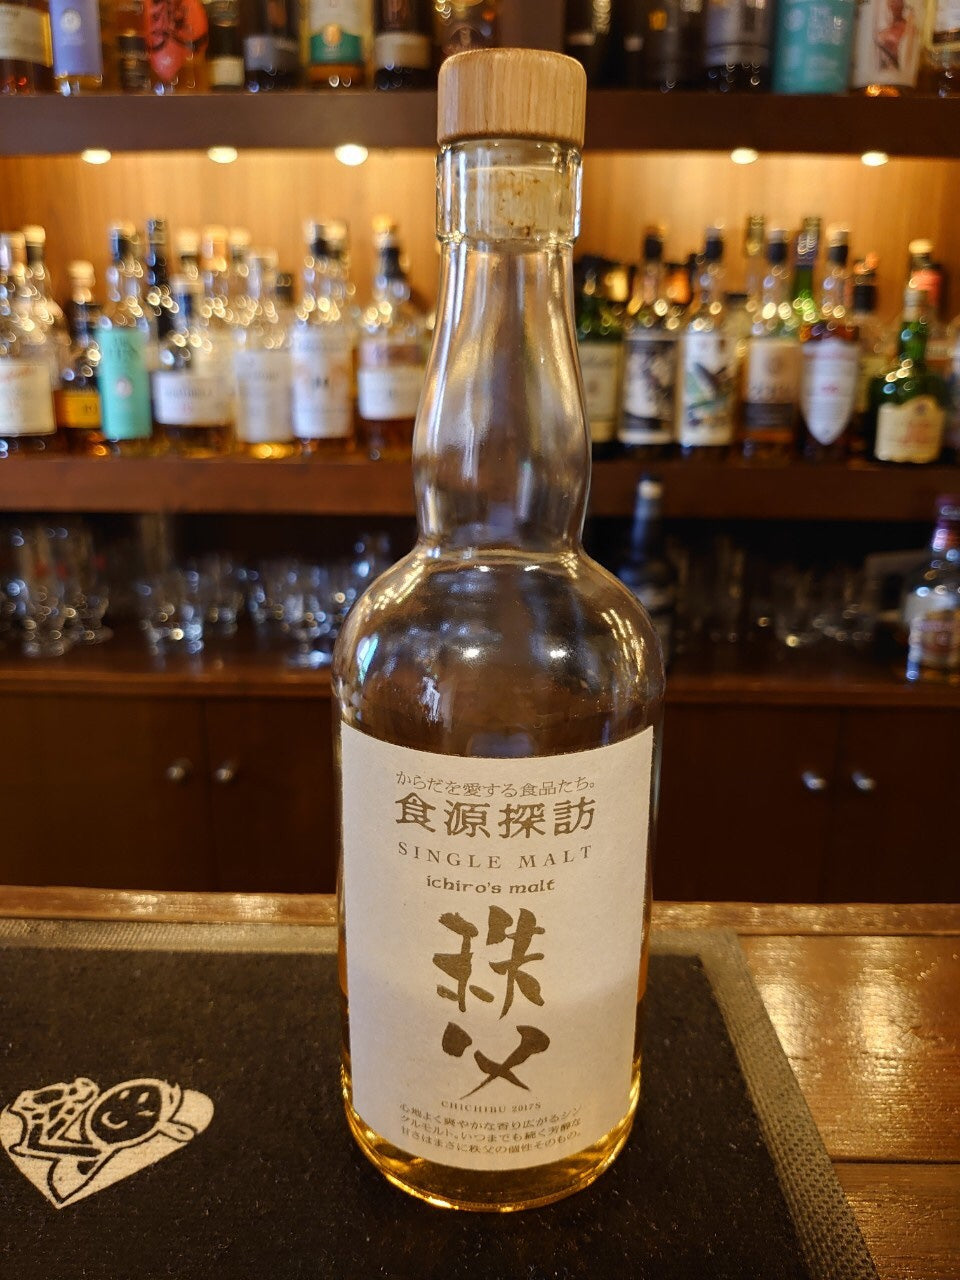 イチローズモルト 秩父 食源探訪2017— Rum＆Whisky リトルハピネス